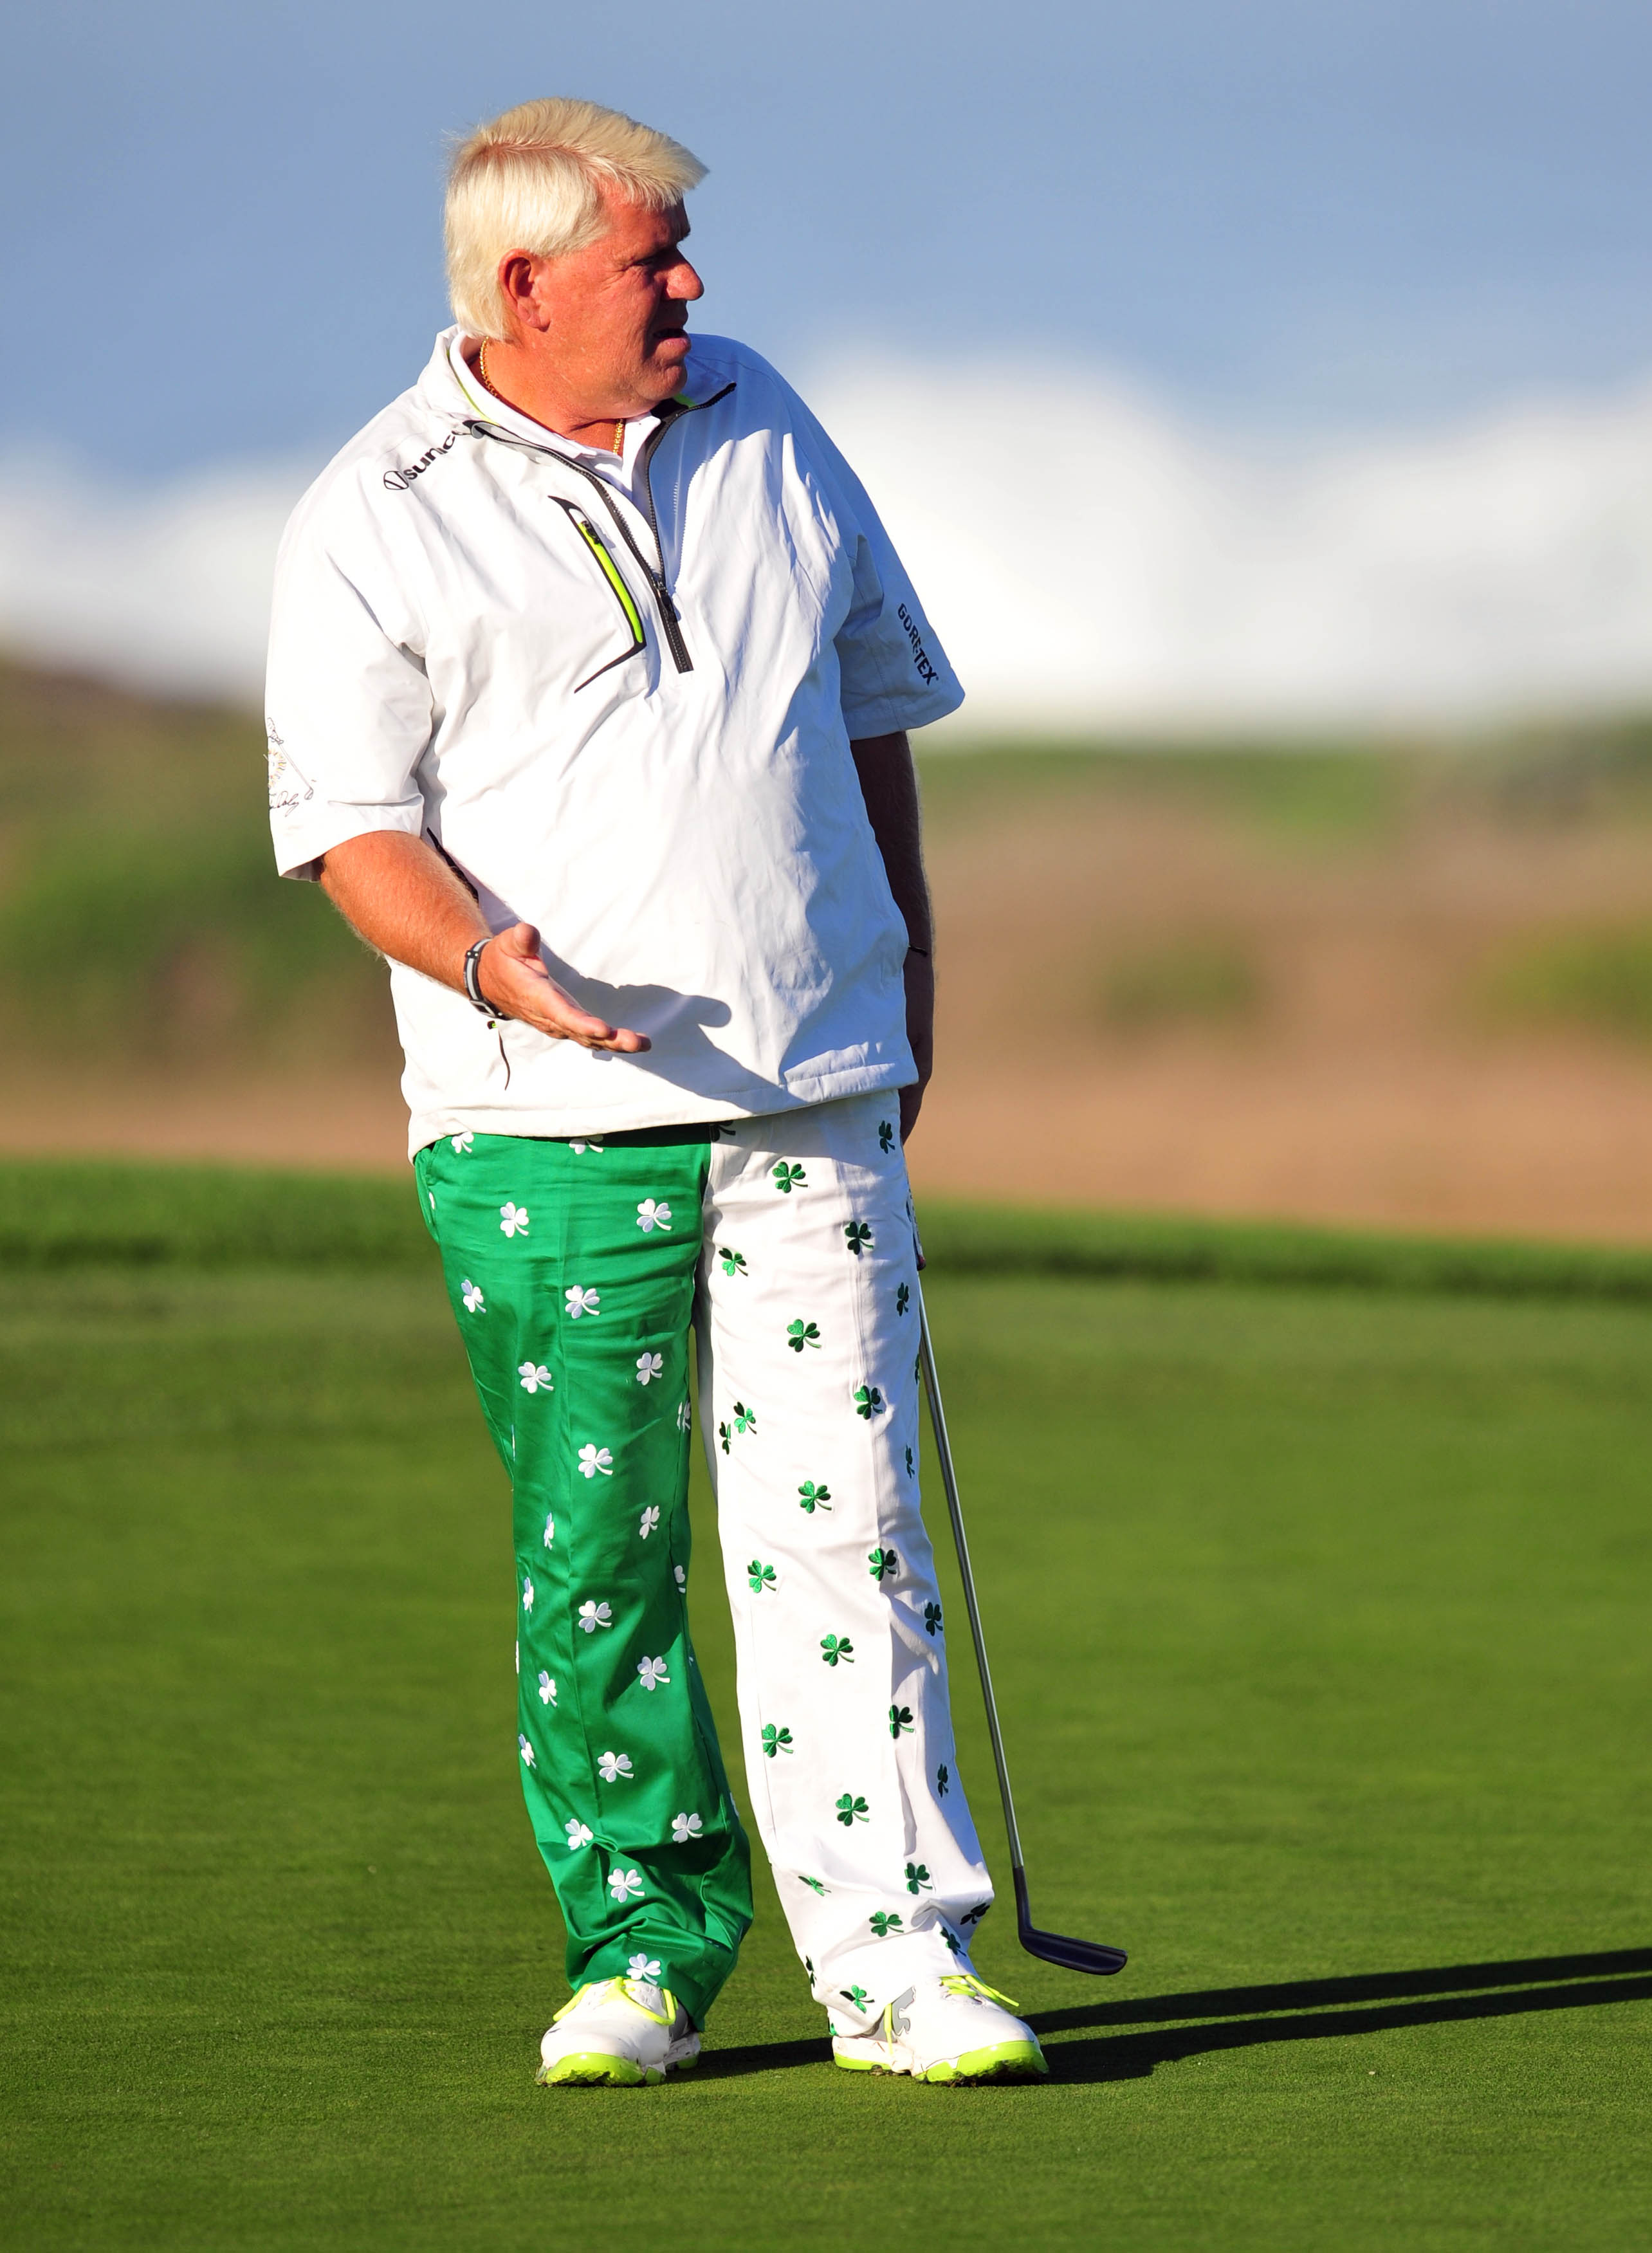 GC930 JOHN DALY Golf Crazy Pants 8x10 11x14 16x20 Photo